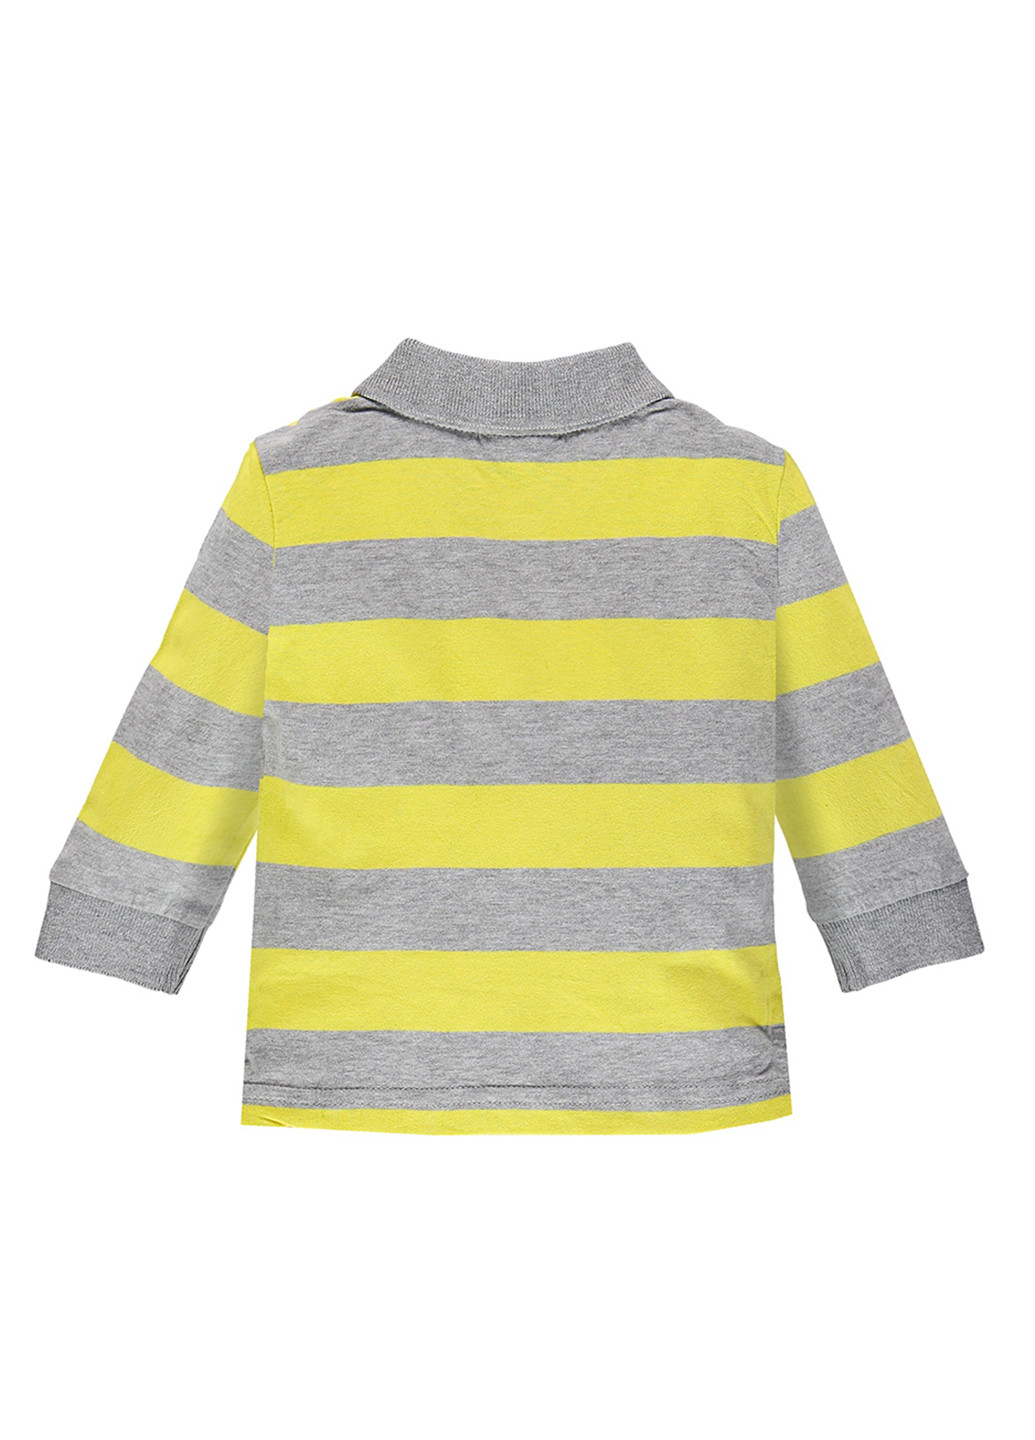 Желтая детская футболка-поло для мальчика Brums в полоску